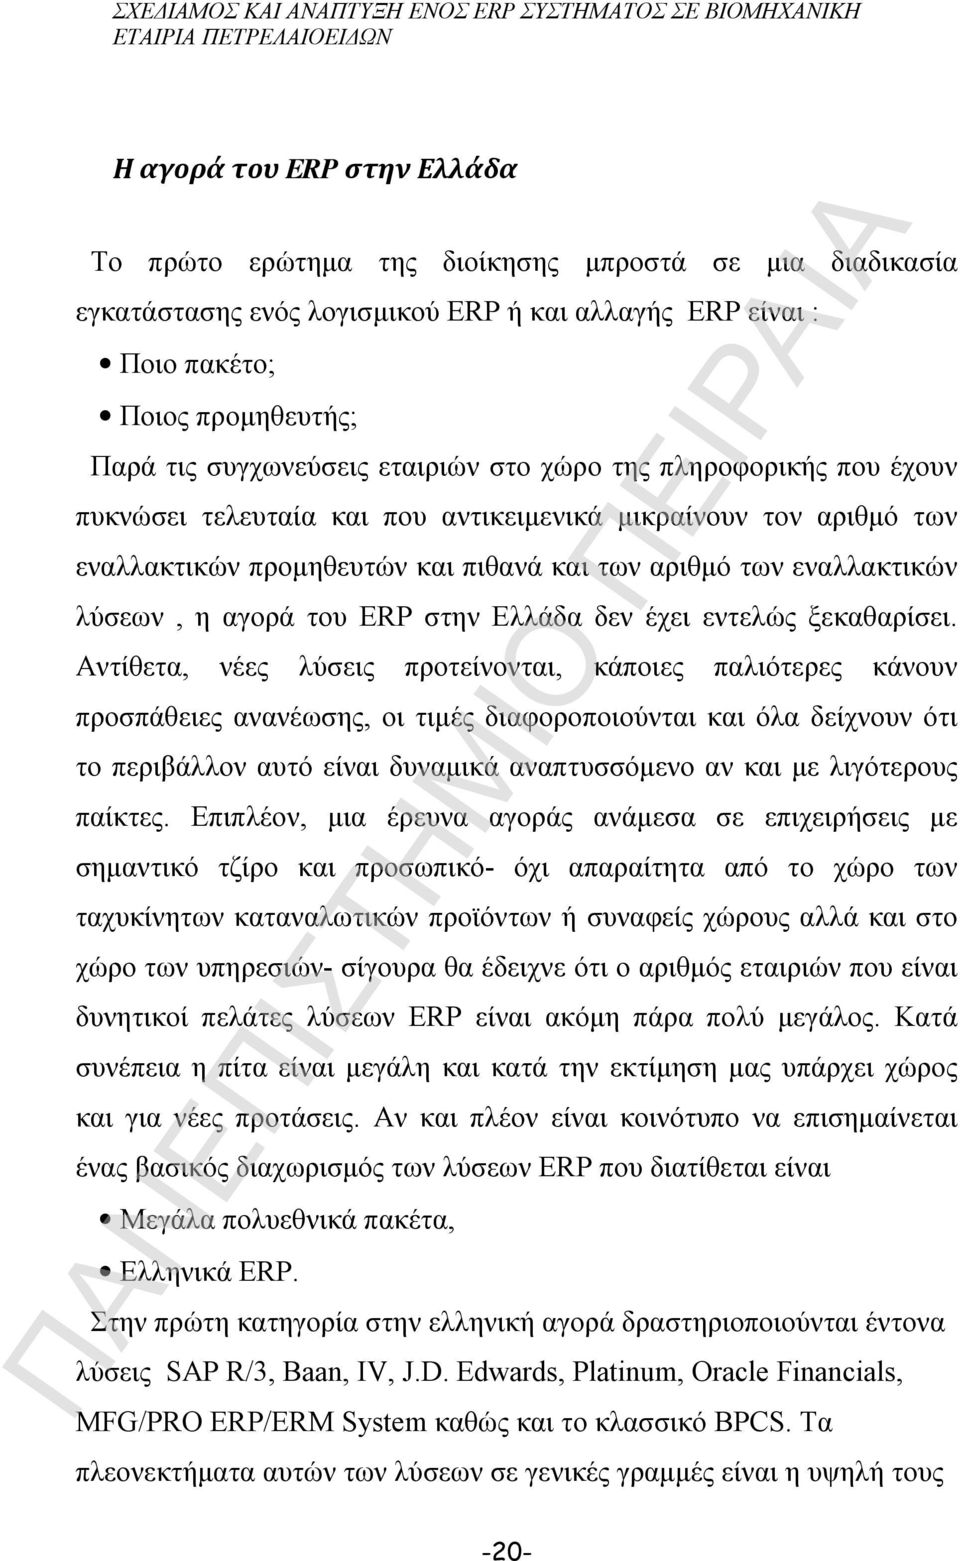 ERP στην Ελλάδα δεν έχει εντελώς ξεκαθαρίσει.